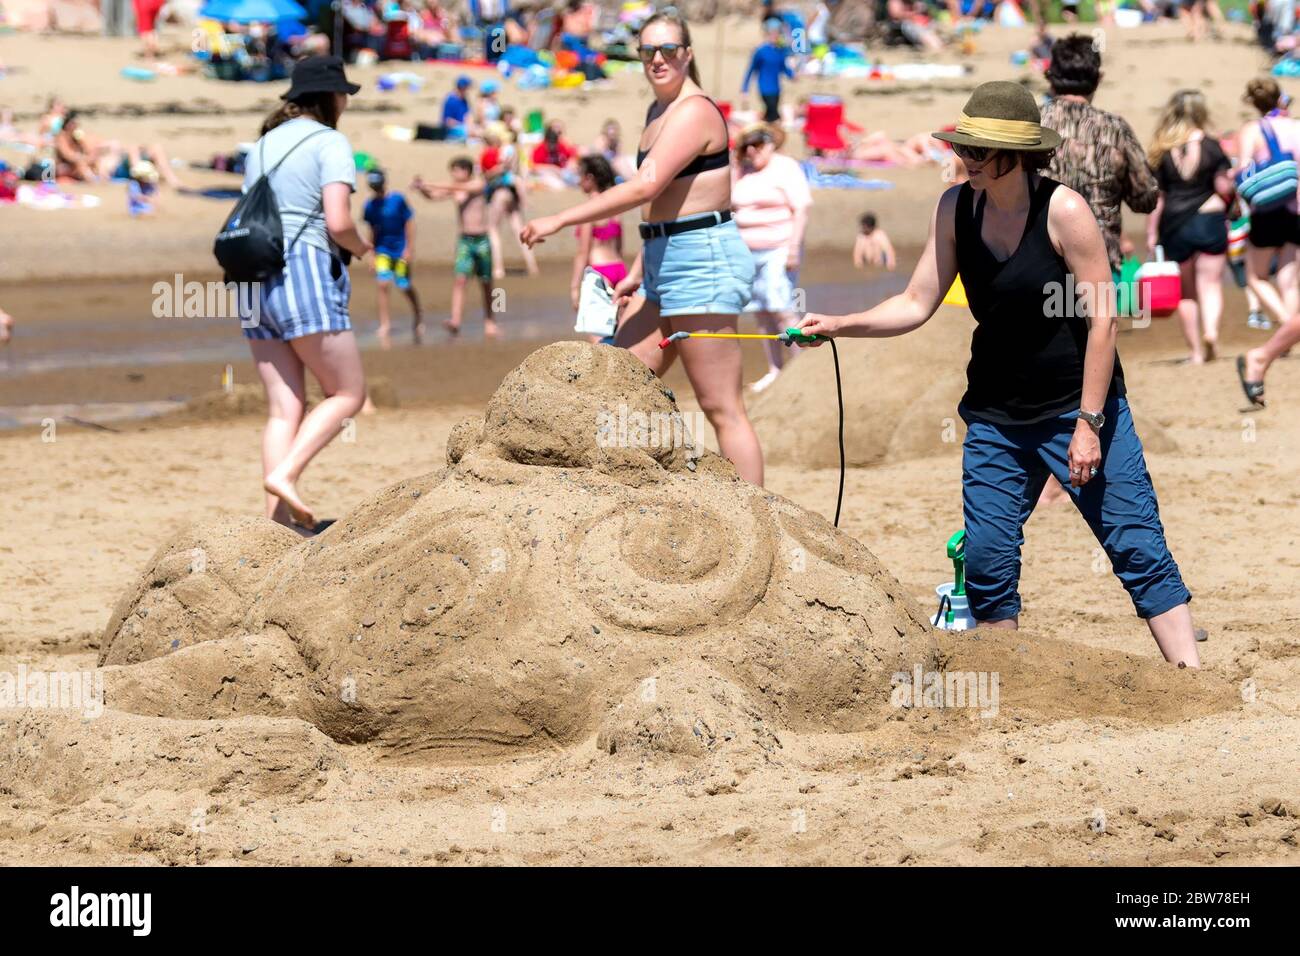 New River Beach, Nouveau-Brunswick, Canada - le 7 juillet 2018 : le concours annuel de sculpture sur sable. Une femme pulvérise de l'eau sur une sculpture d'une mère et d'un bébé Banque D'Images